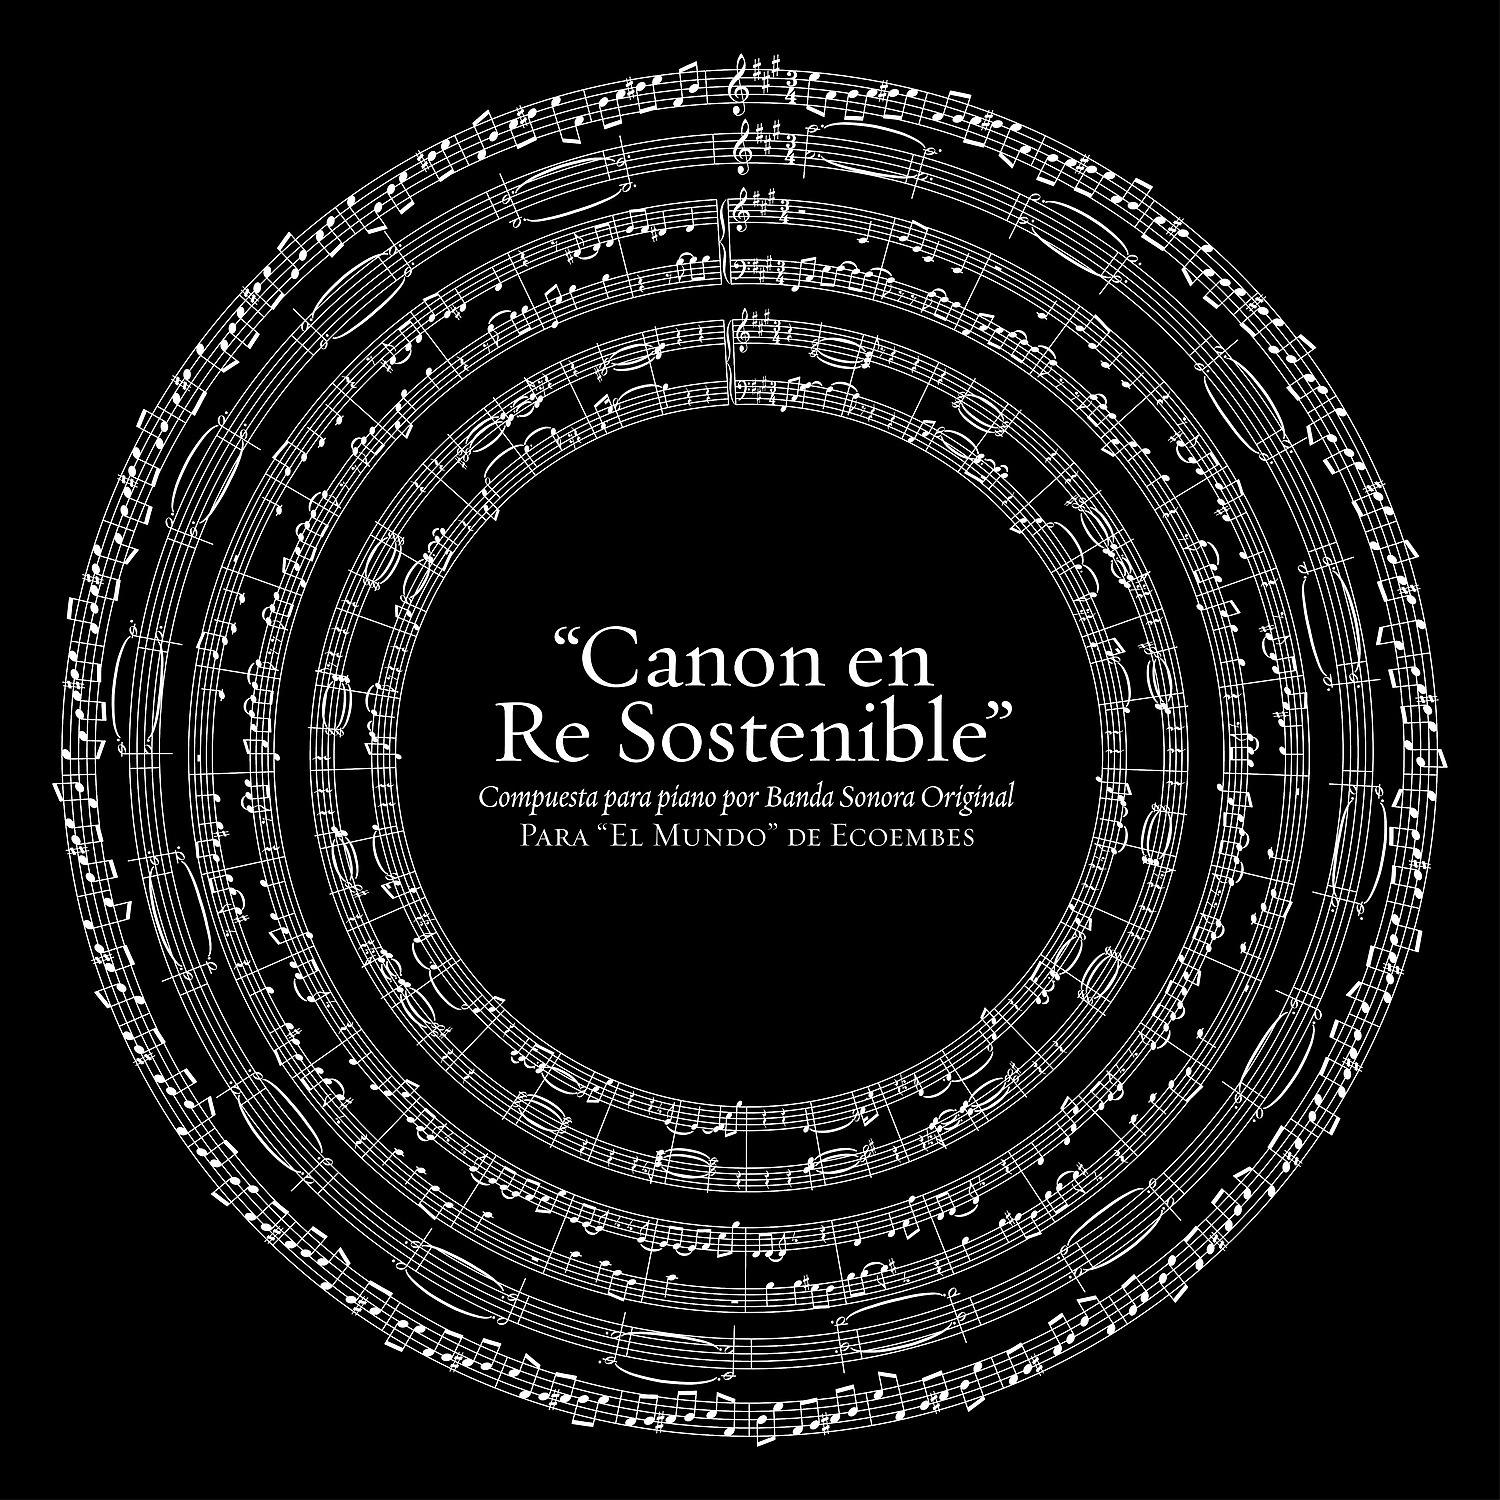 Постер альбома "Canon en Re Sostenible" (Compuesta para piano por Banda Sonora Original para "El mundo" de Ecoembes)